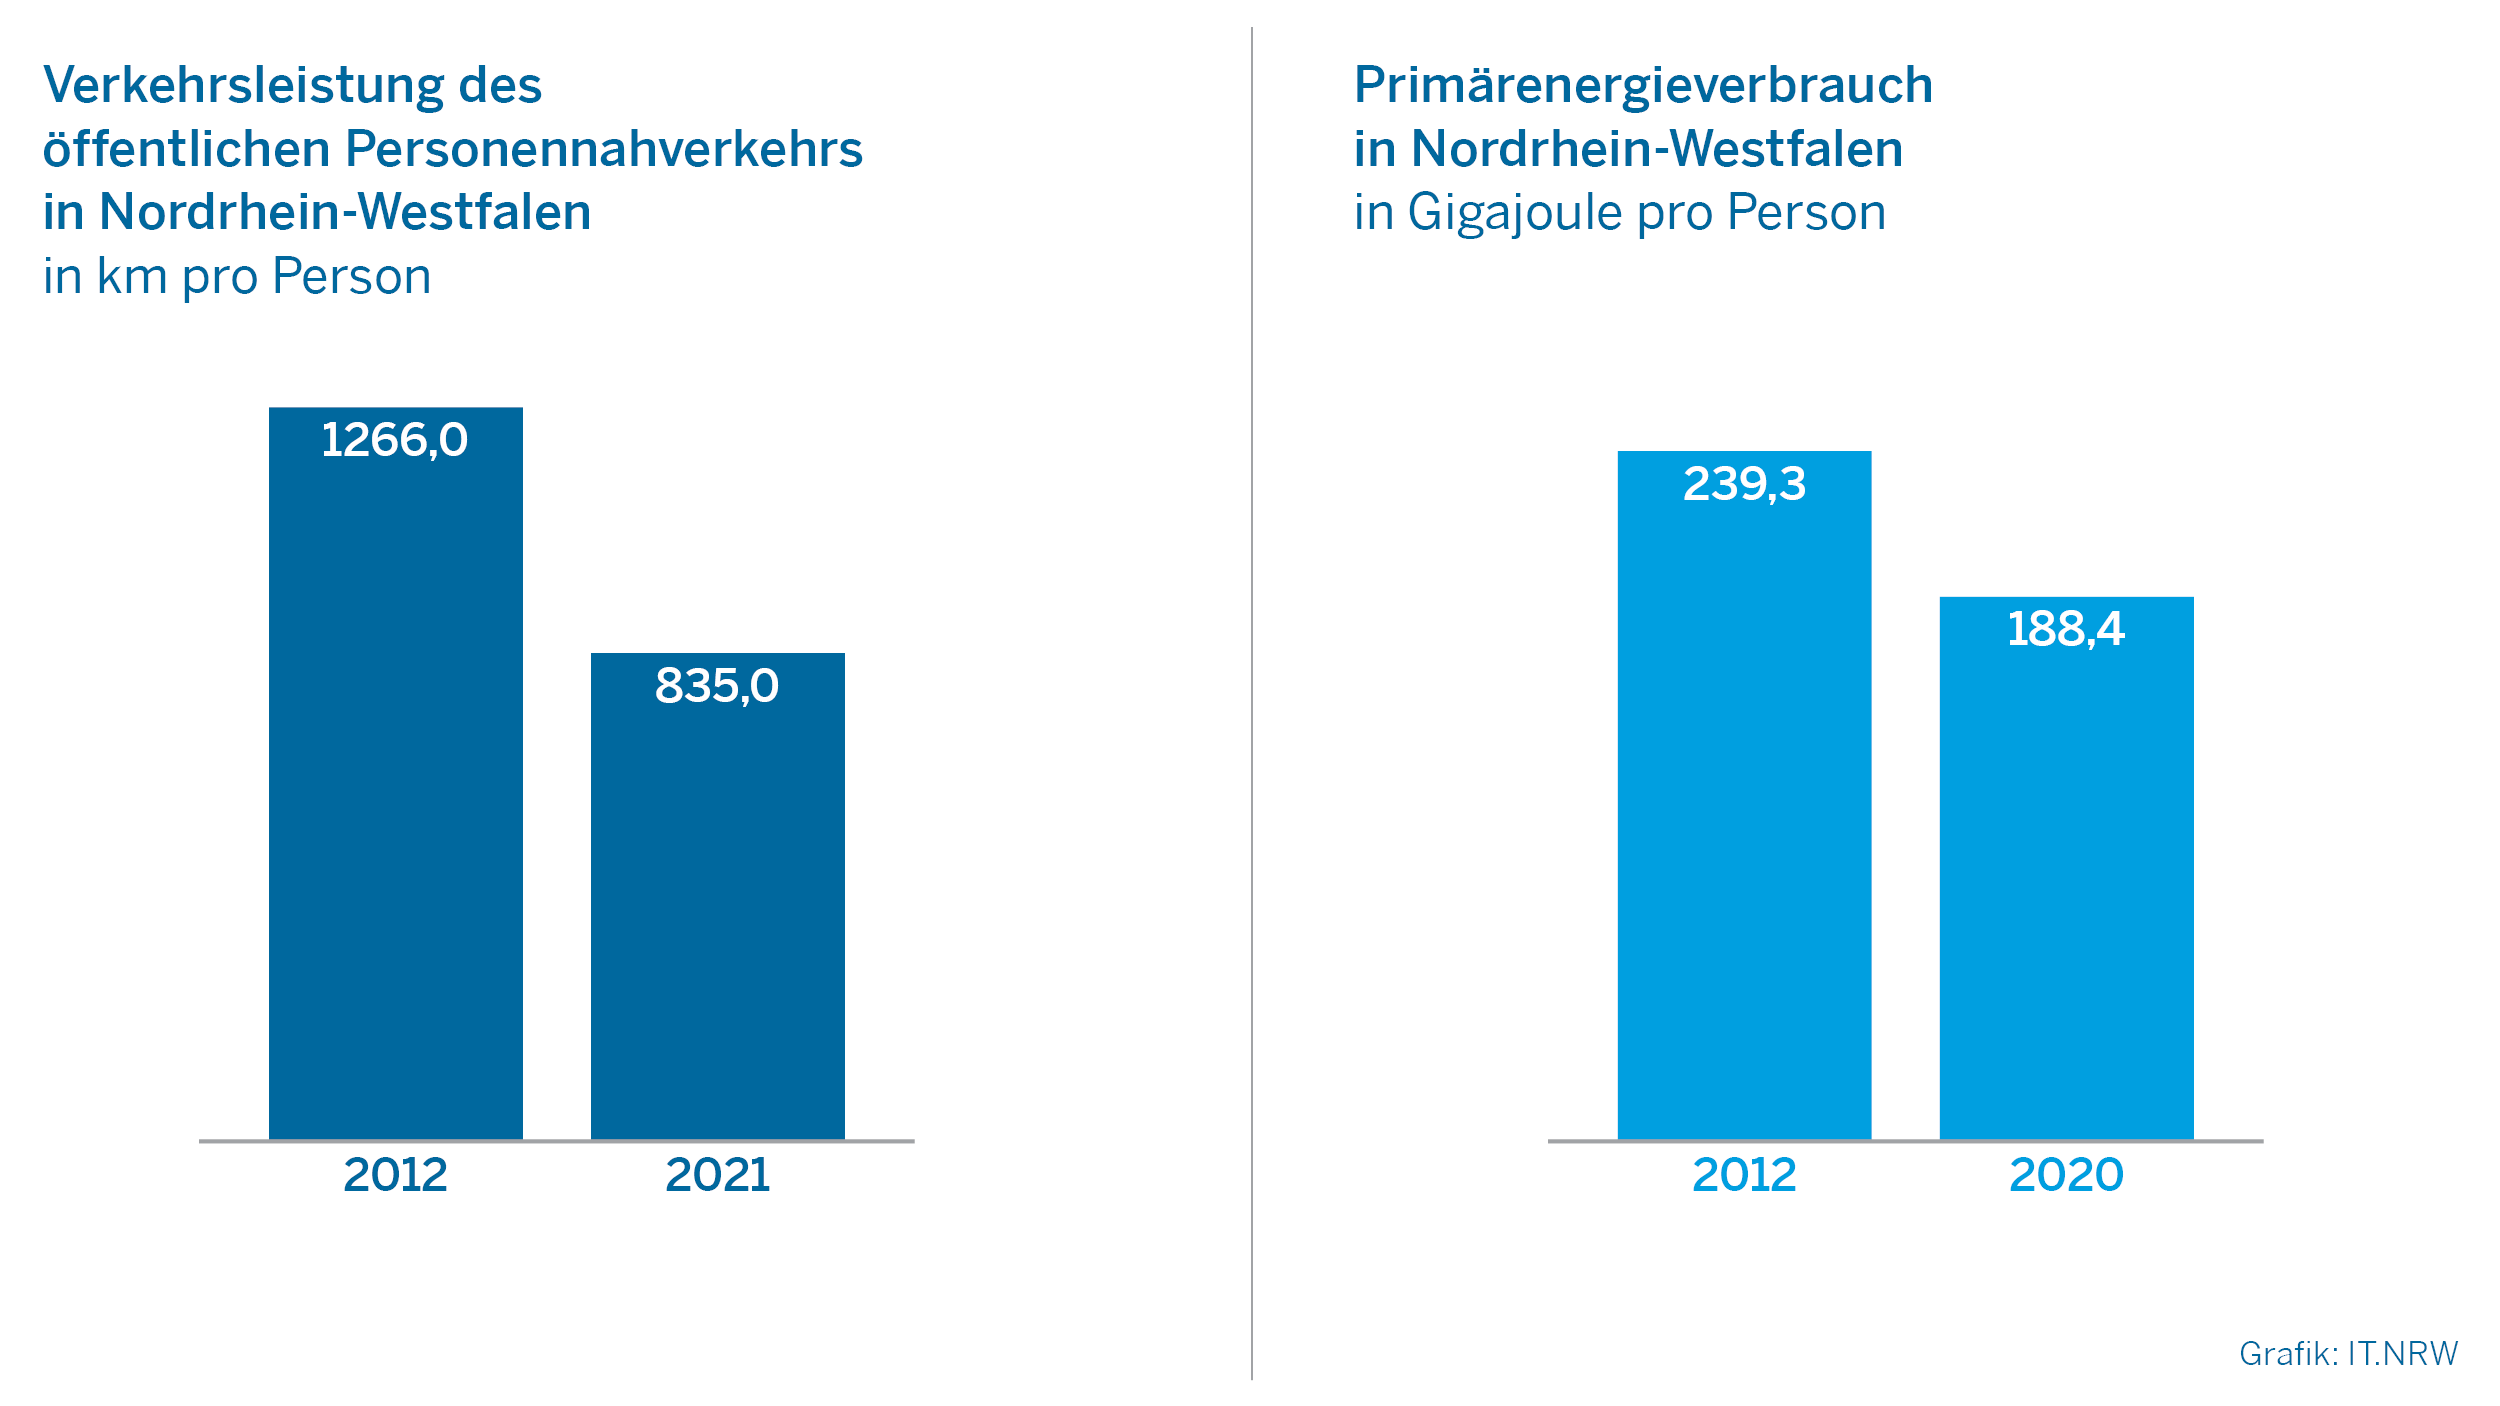 Verkehrsleistung des öffentlichen Personennahverkehrs und Primärenergieverbrauch in Nordrhein-Westfalen